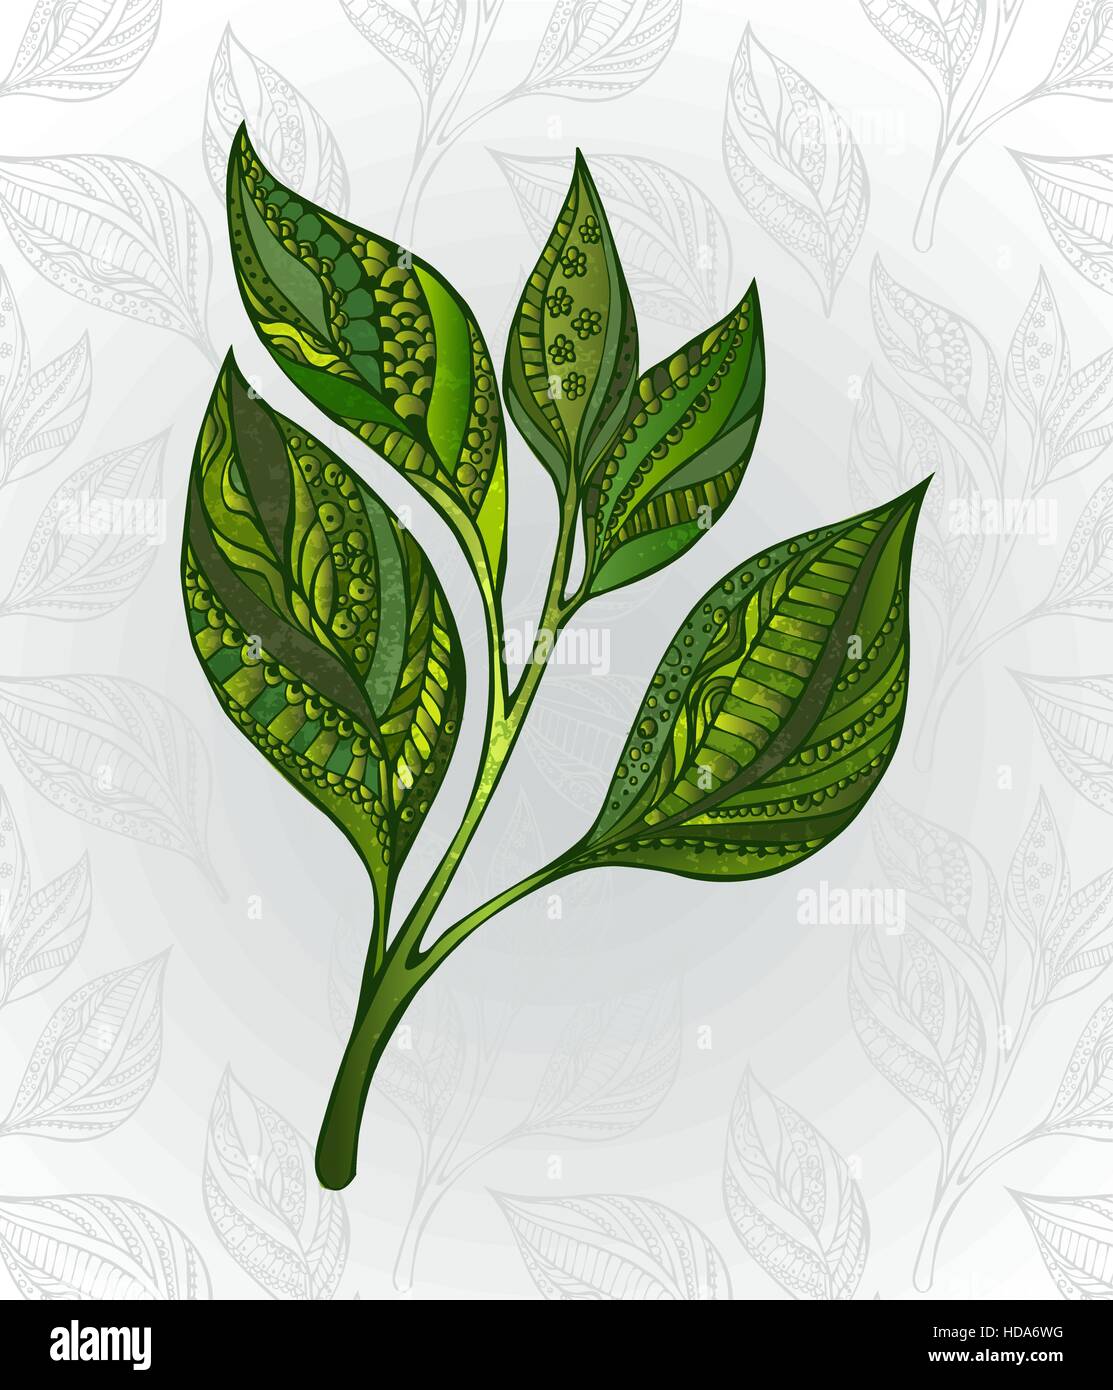 Grüner Tee sprießen, dekoriert mit einem abstrakten Muster auf einem grauen Hintergrund, verziert mit stilisierten Blättern. Tee-Design. Hand gezeichnet. Skizze, Zeichnung Stock Vektor